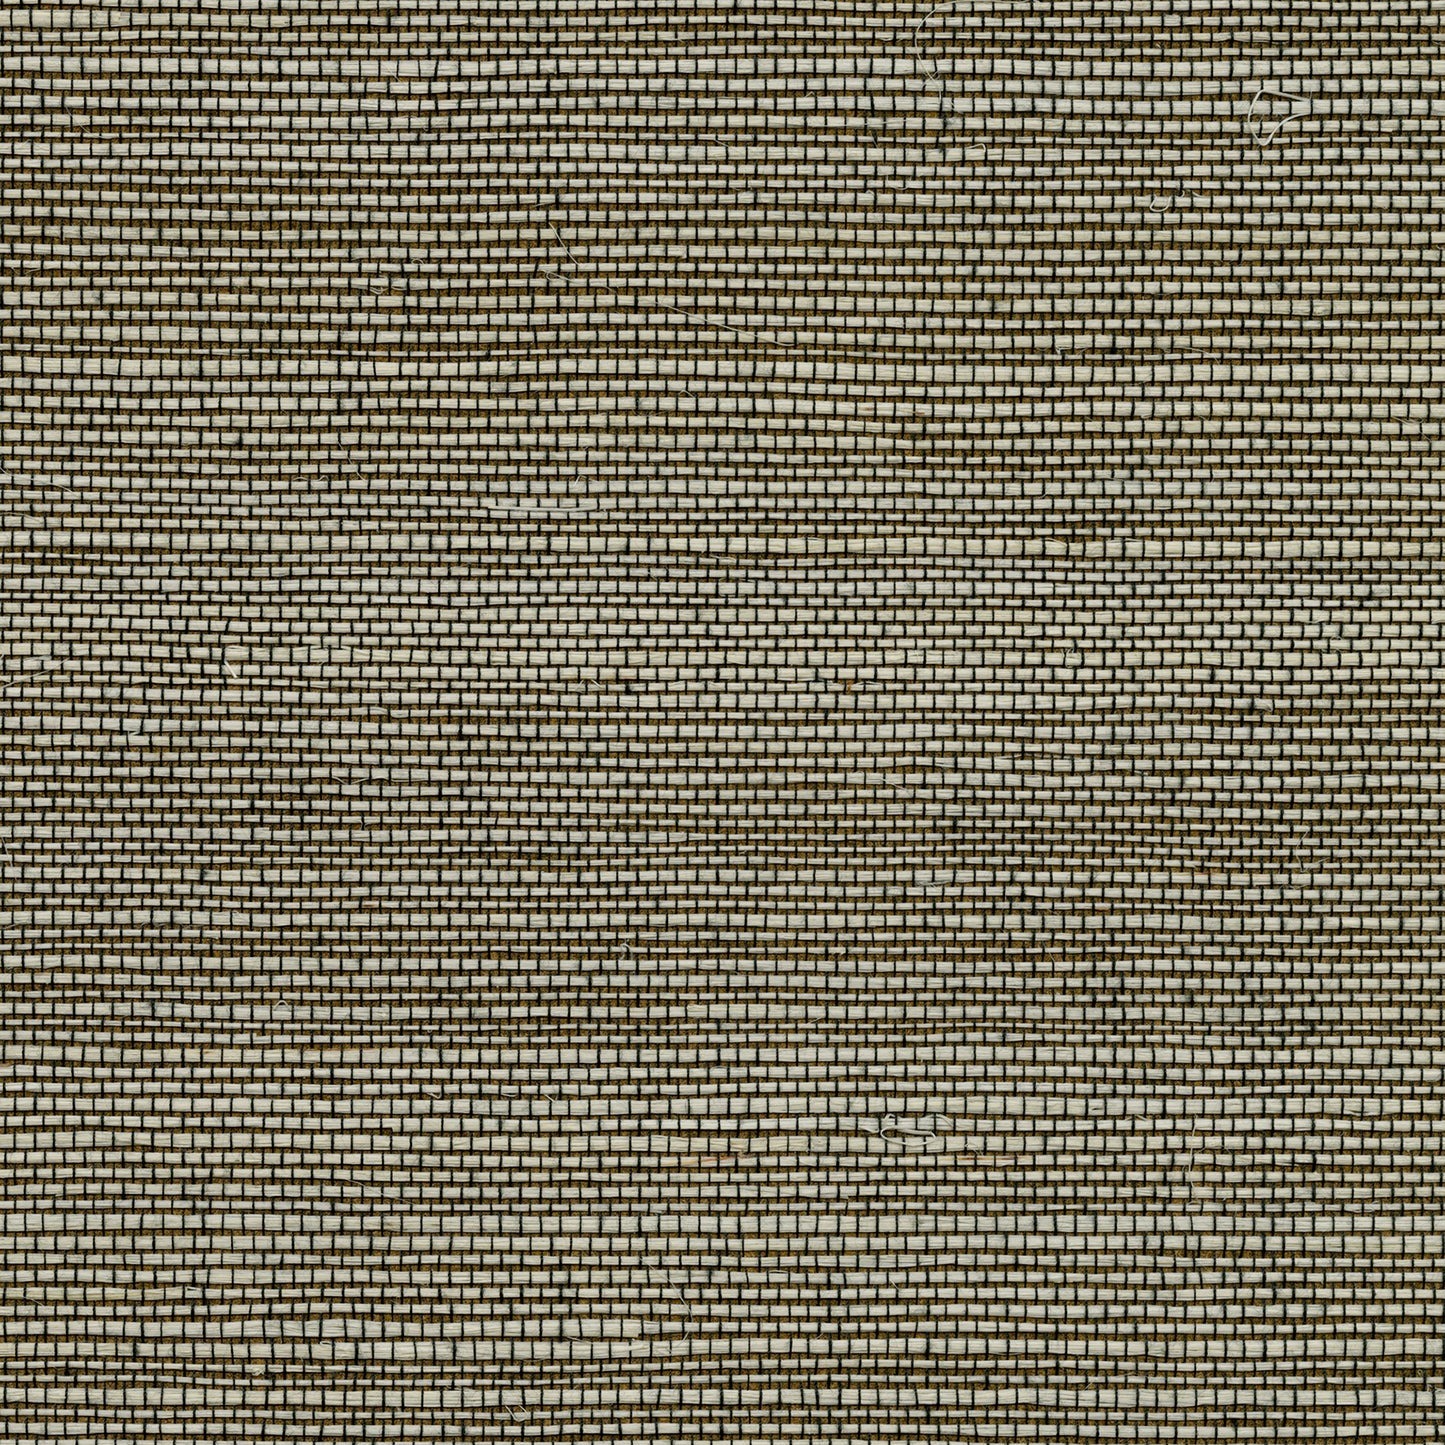 Find 4018-0034 Grasscloth Portfolio Jiao Brown Grasscloth Brown by Advantage